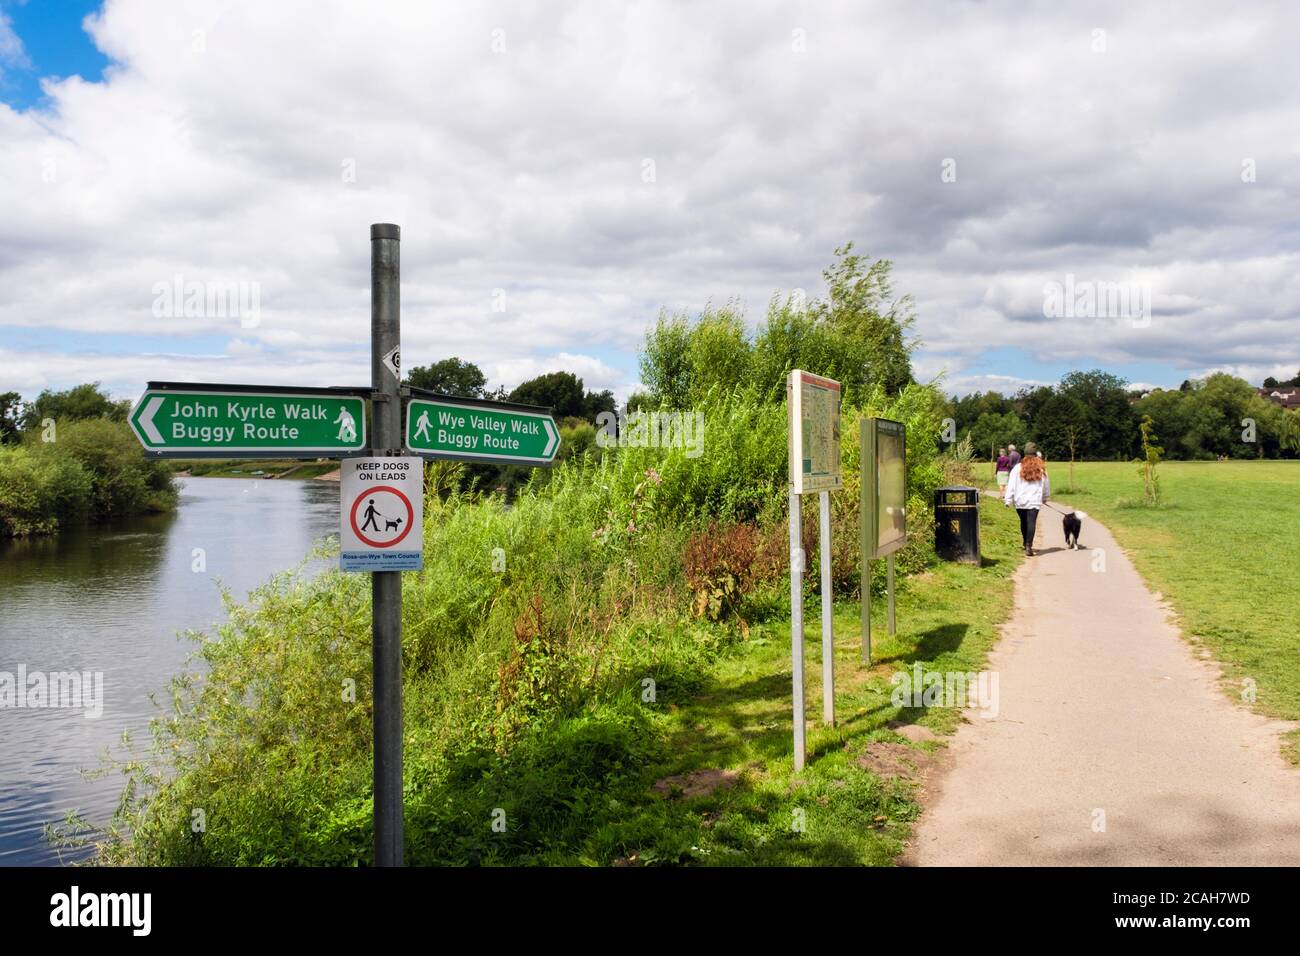 John Kyrle et Wye Valley promenade en buggy route signpoint et chemin à travers un parc au bord de la rivière Wye. Ross on Wye, Herefordshire, Angleterre, Royaume-Uni, Grande-Bretagne Banque D'Images